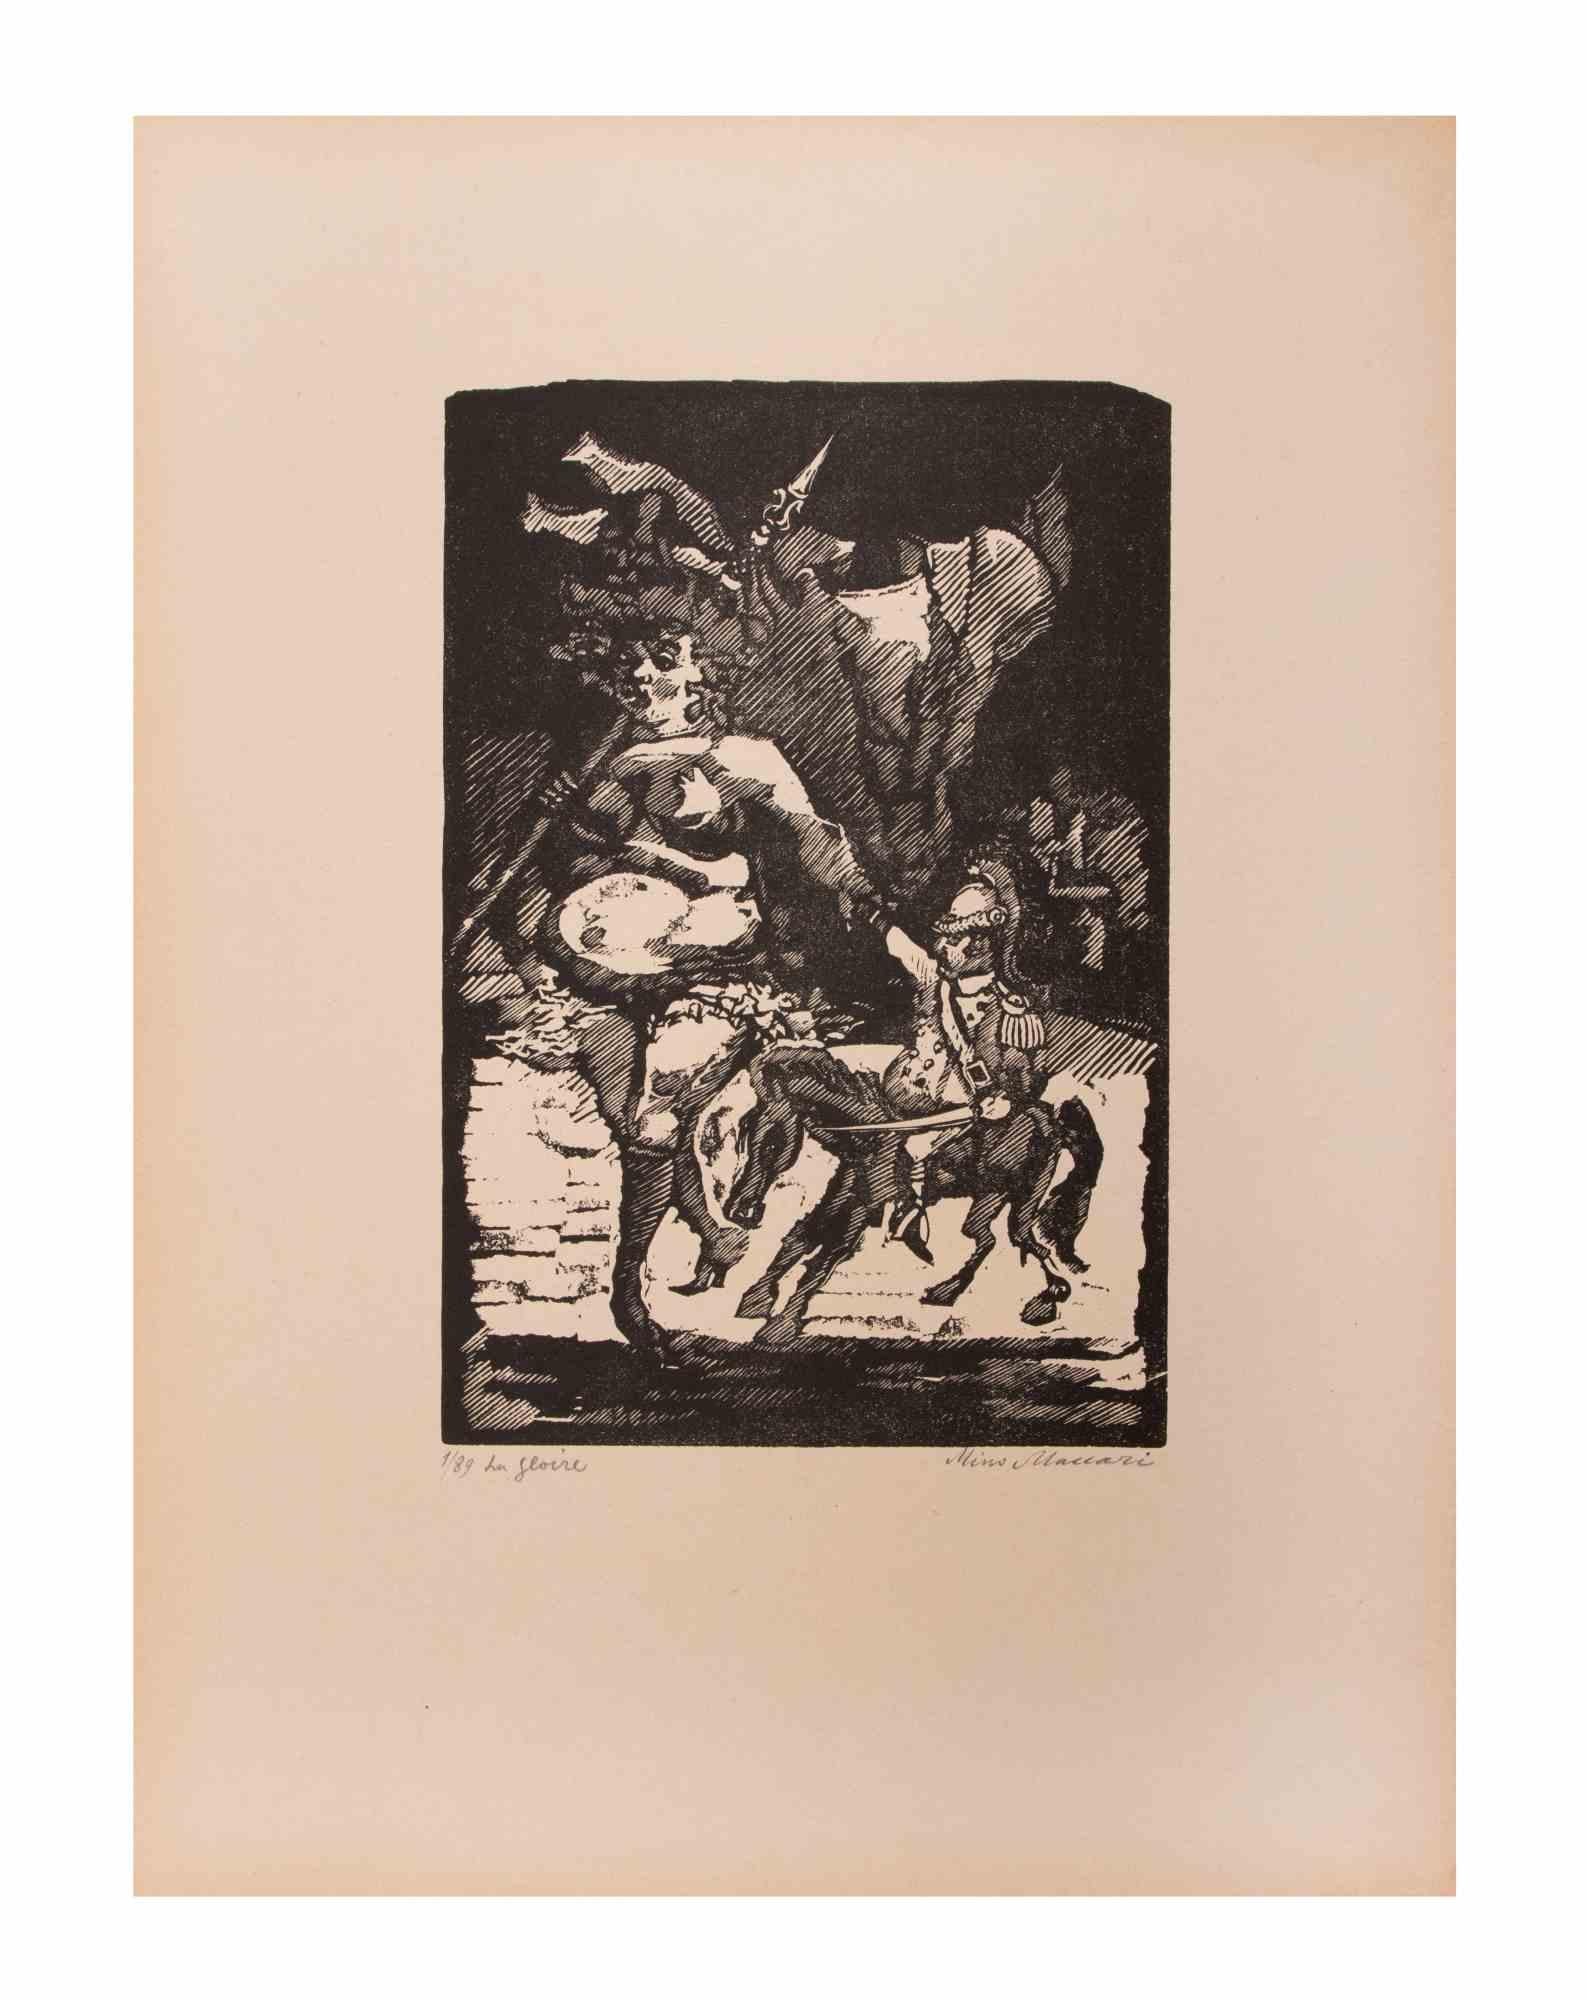 La Gloire ist ein Kunstwerk von Mino Maccari (1924-1989) aus der Mitte des 20. Jahrhunderts.

B./W. Holzschnitt auf Papier. Unten handsigniert, nummeriert 1/89 Exemplare und am linken Rand betitelt.

Gute Bedingungen.

Mino Maccari (Siena, 1924-Rom,